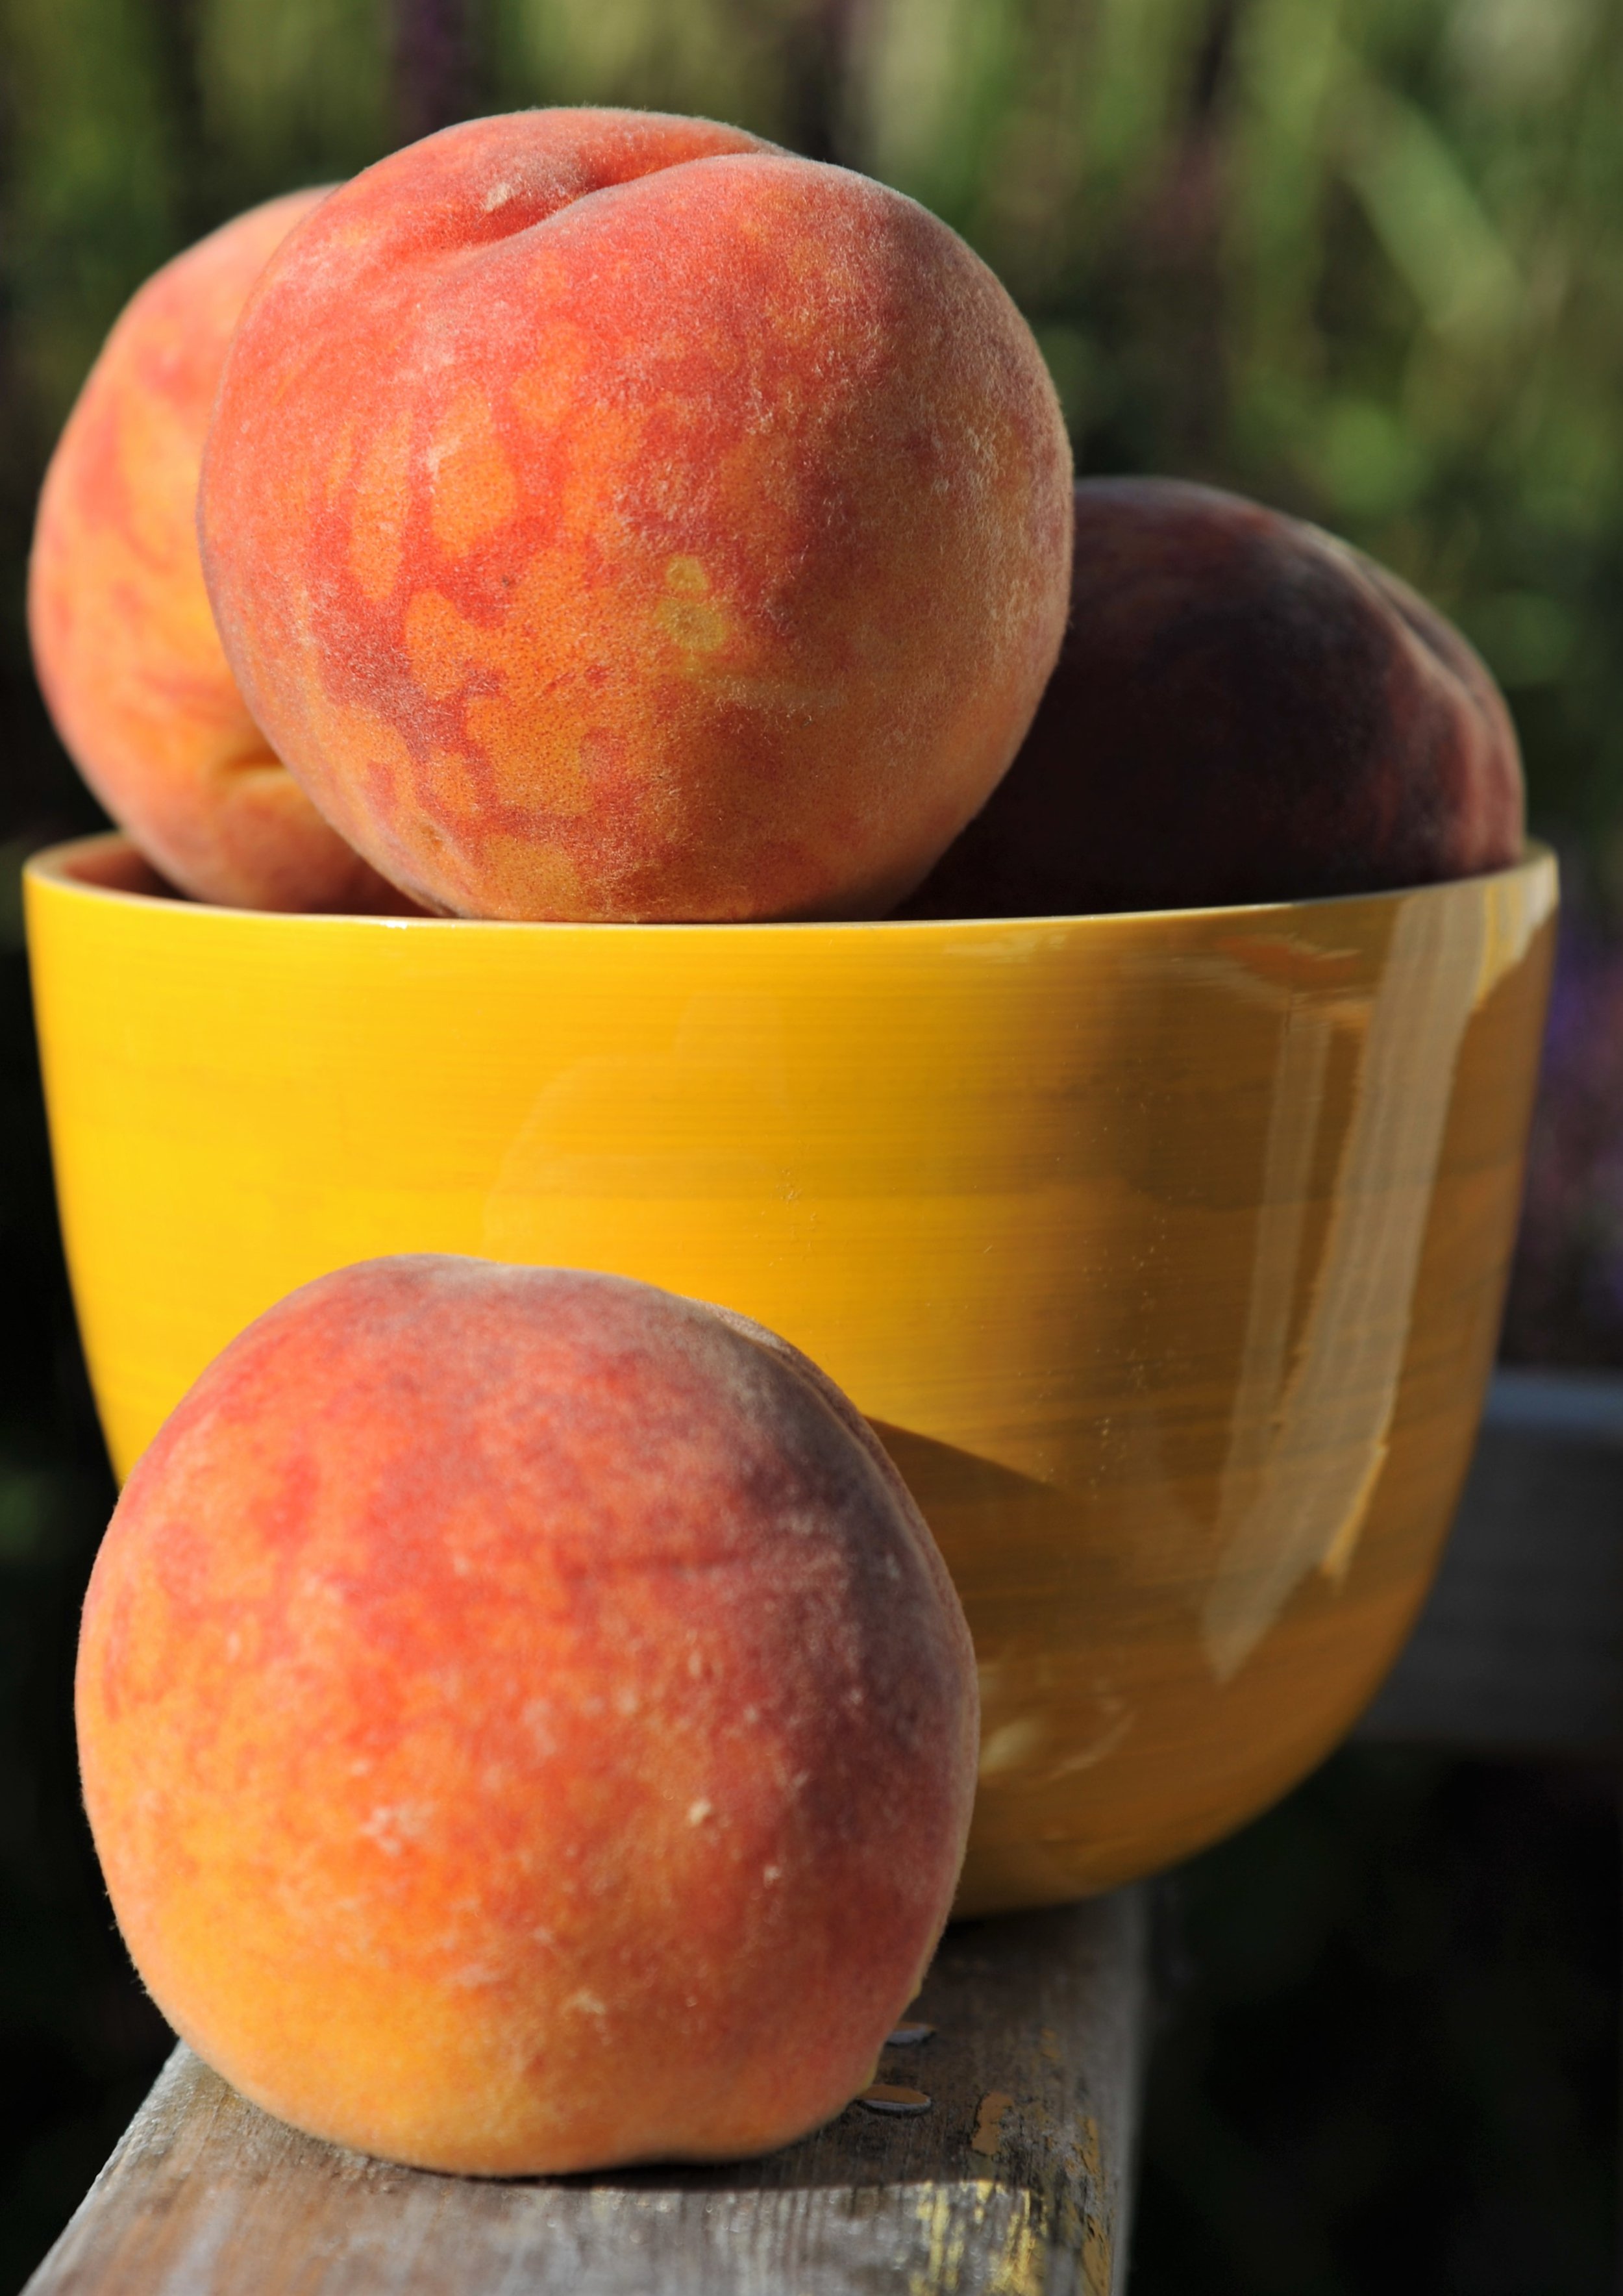 Peach and 15 x10.jpg